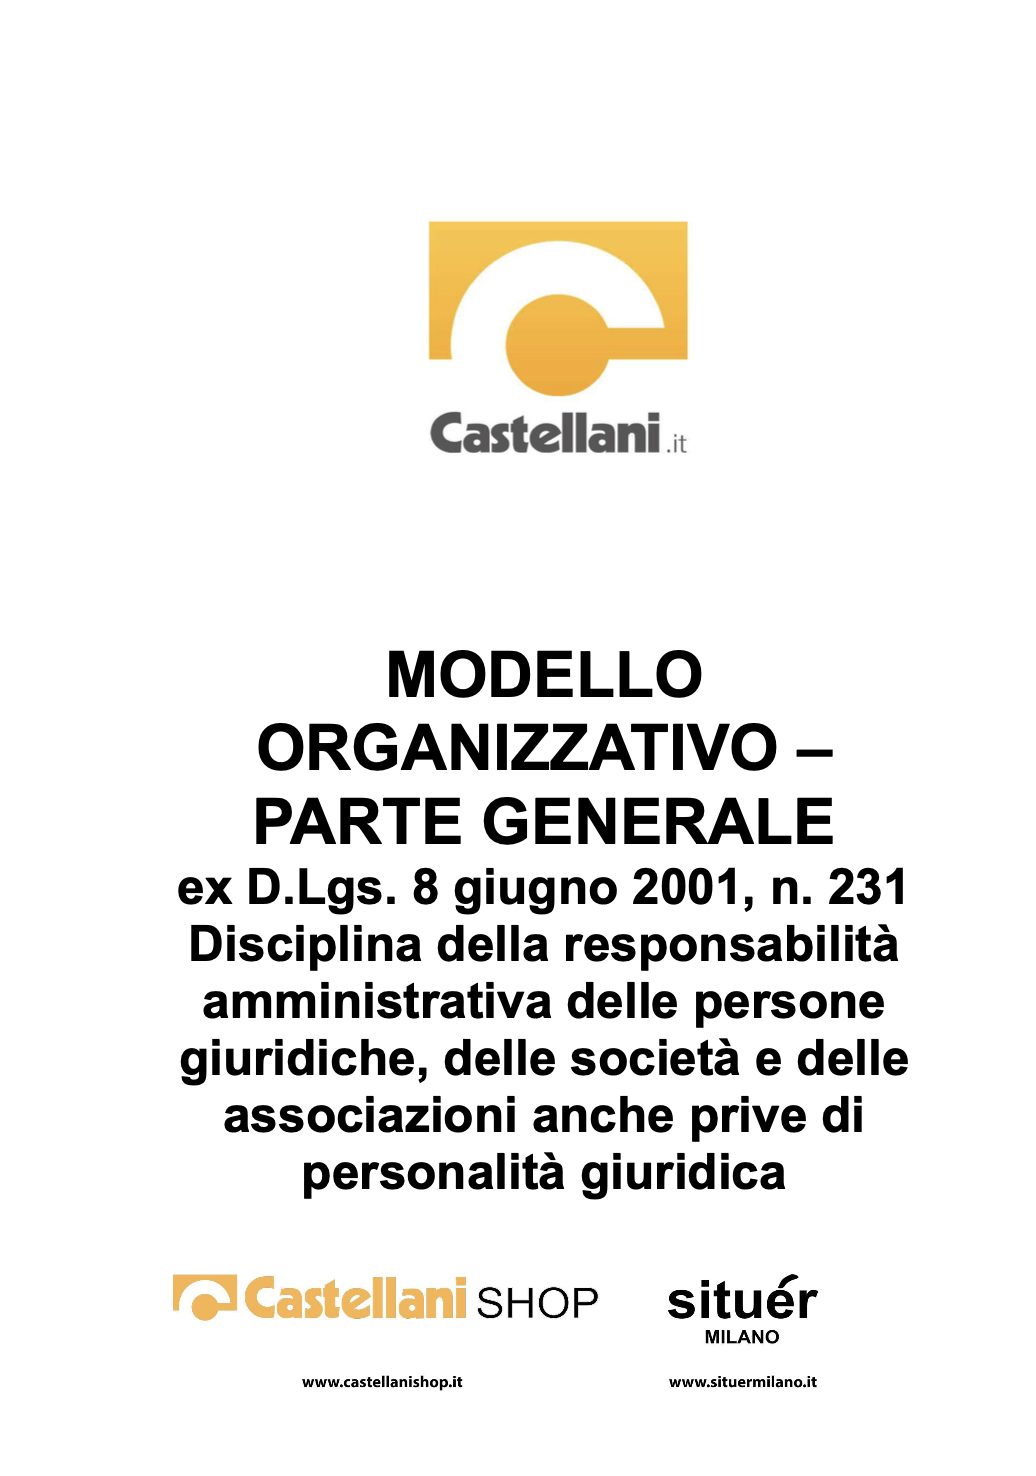 https://castellani.b-cdn.net/media/wysiwyg/mod-organizz-parte-generale1.png